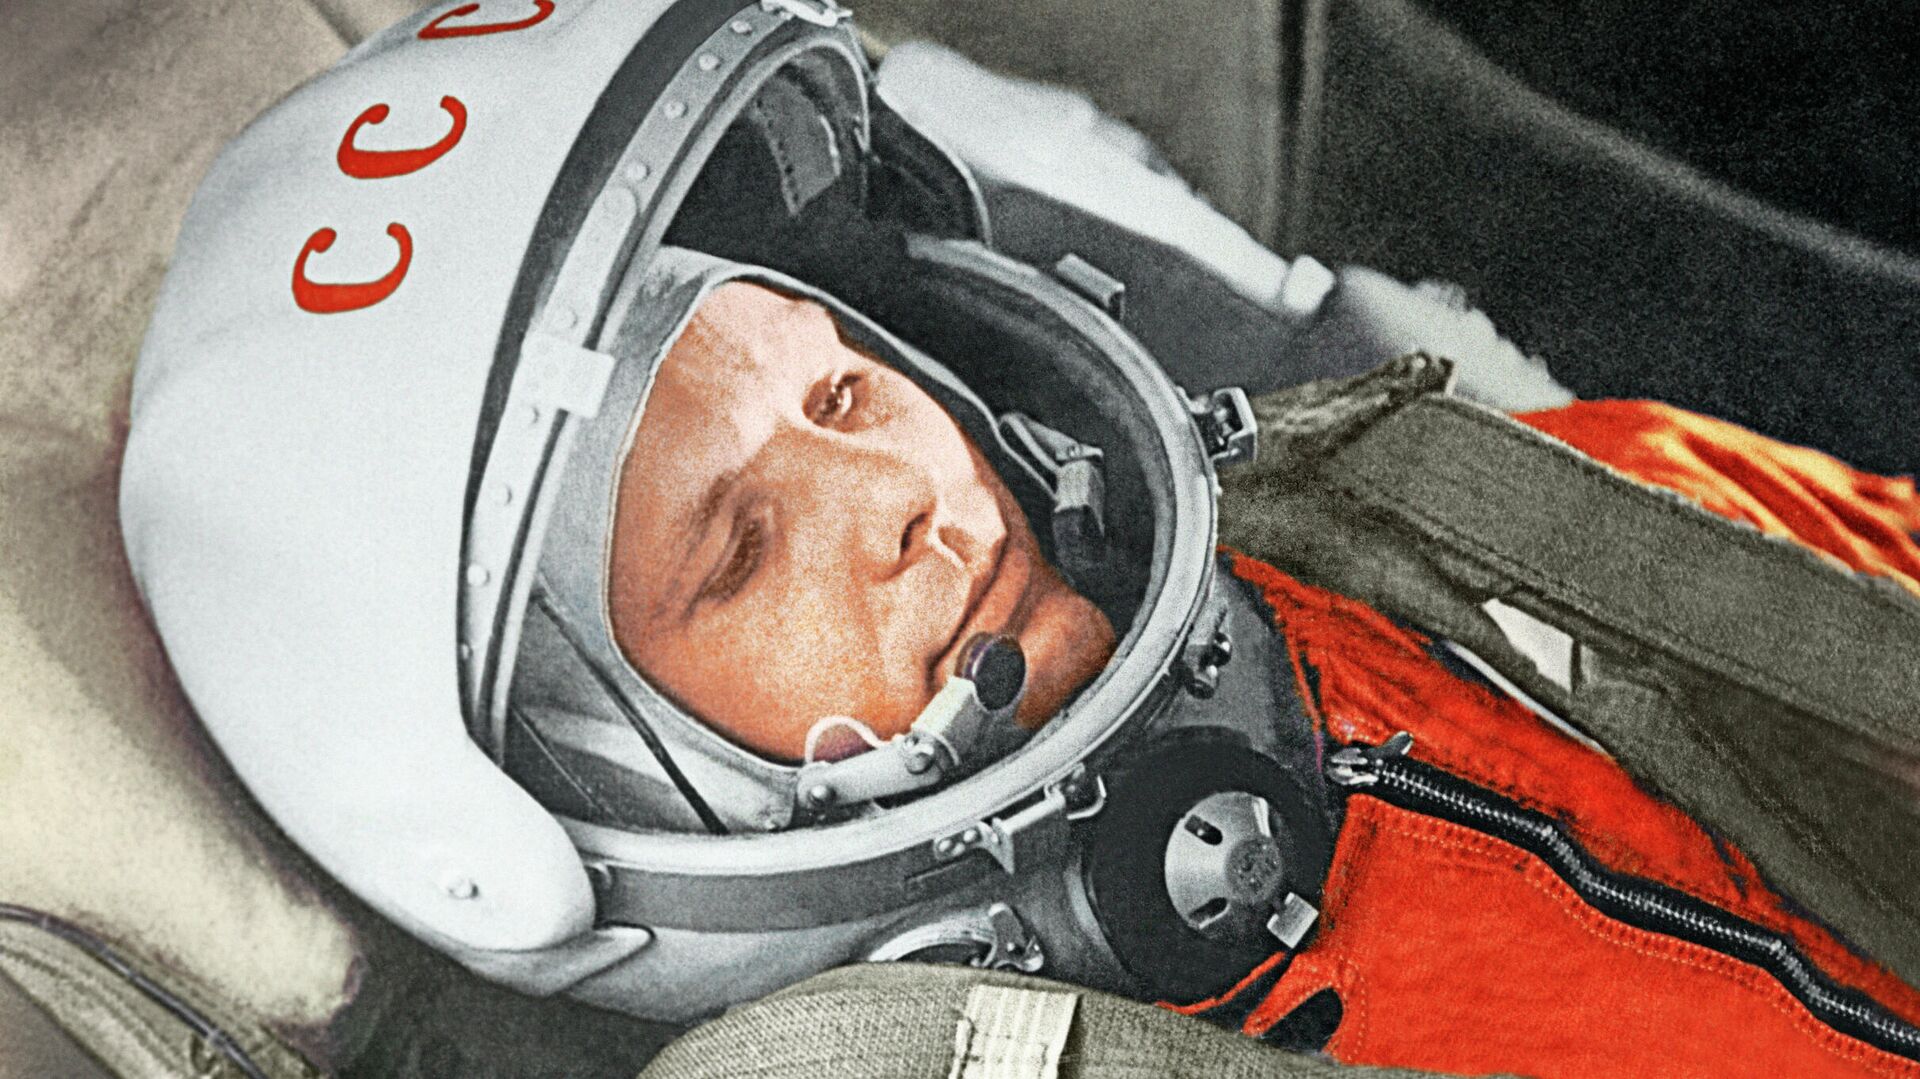 Юрий Гагарин в кабине космического корабля “Восток” во время первого в мире орбитального космического полета 12 апреля 1961 года - РИА Новости, 1920, 12.04.2021